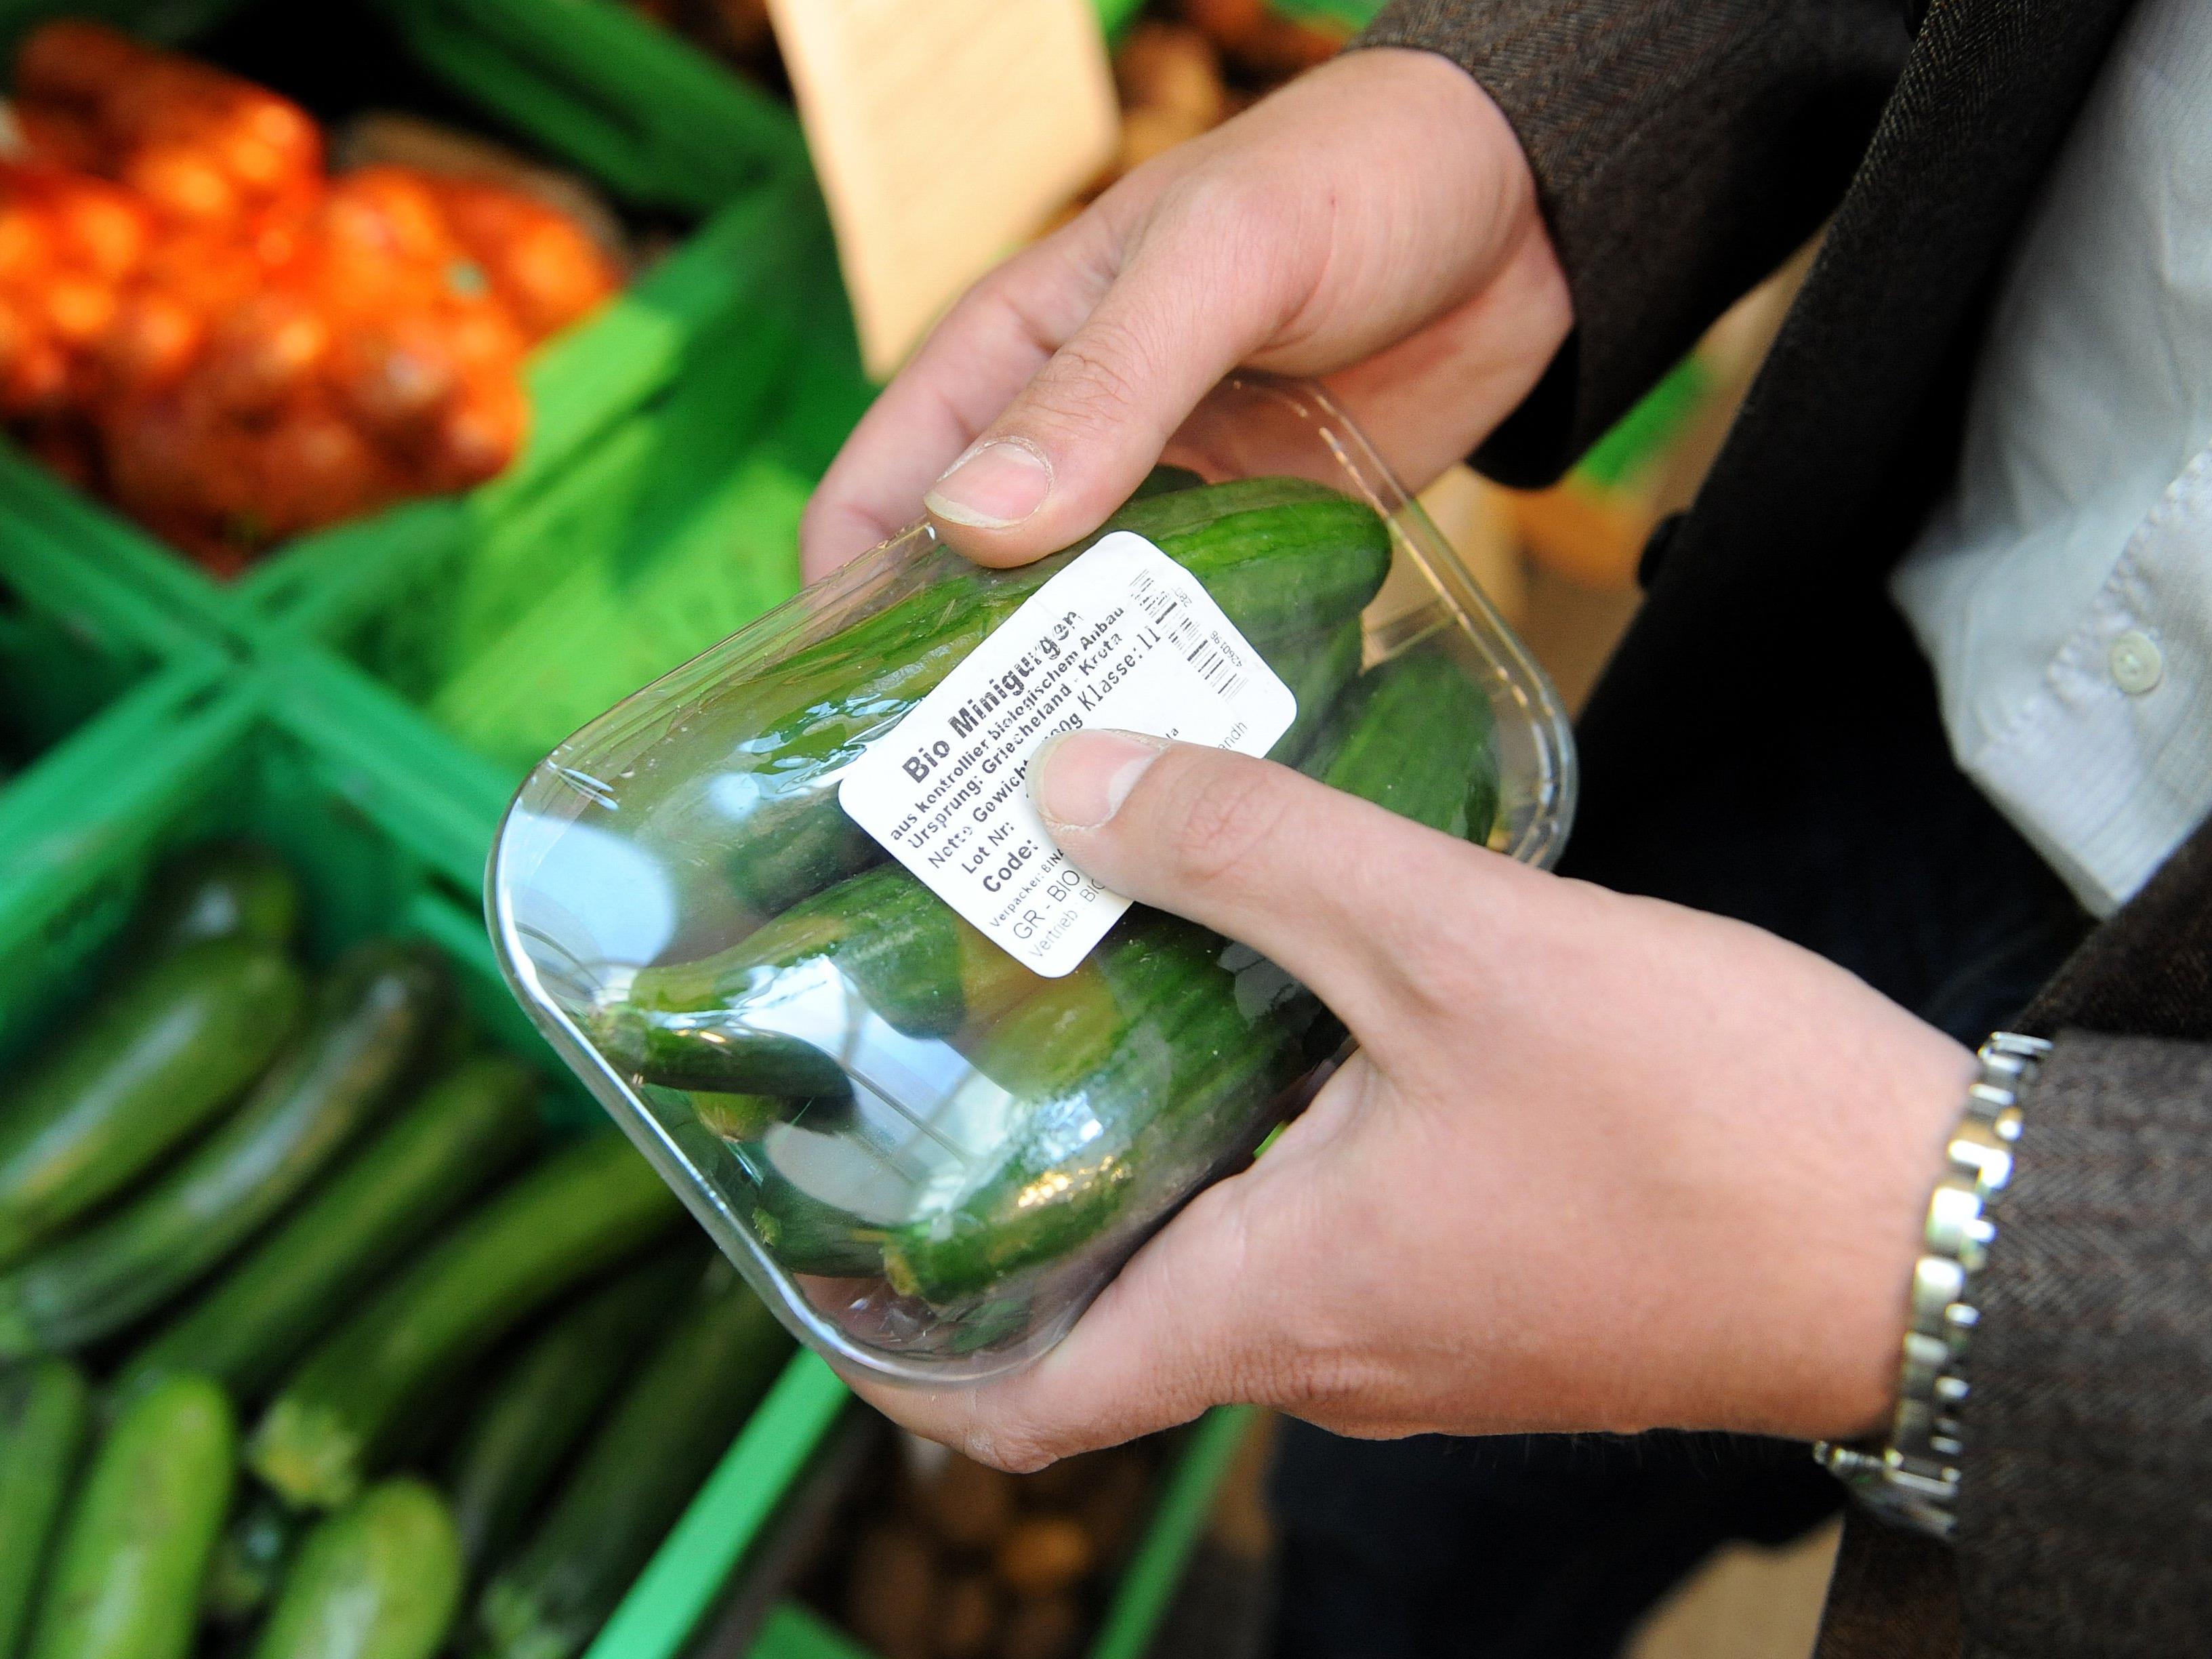 Bio-Angebot in Supermärkten: Ergebnis für Greenpeace "mehr als erfreulich.